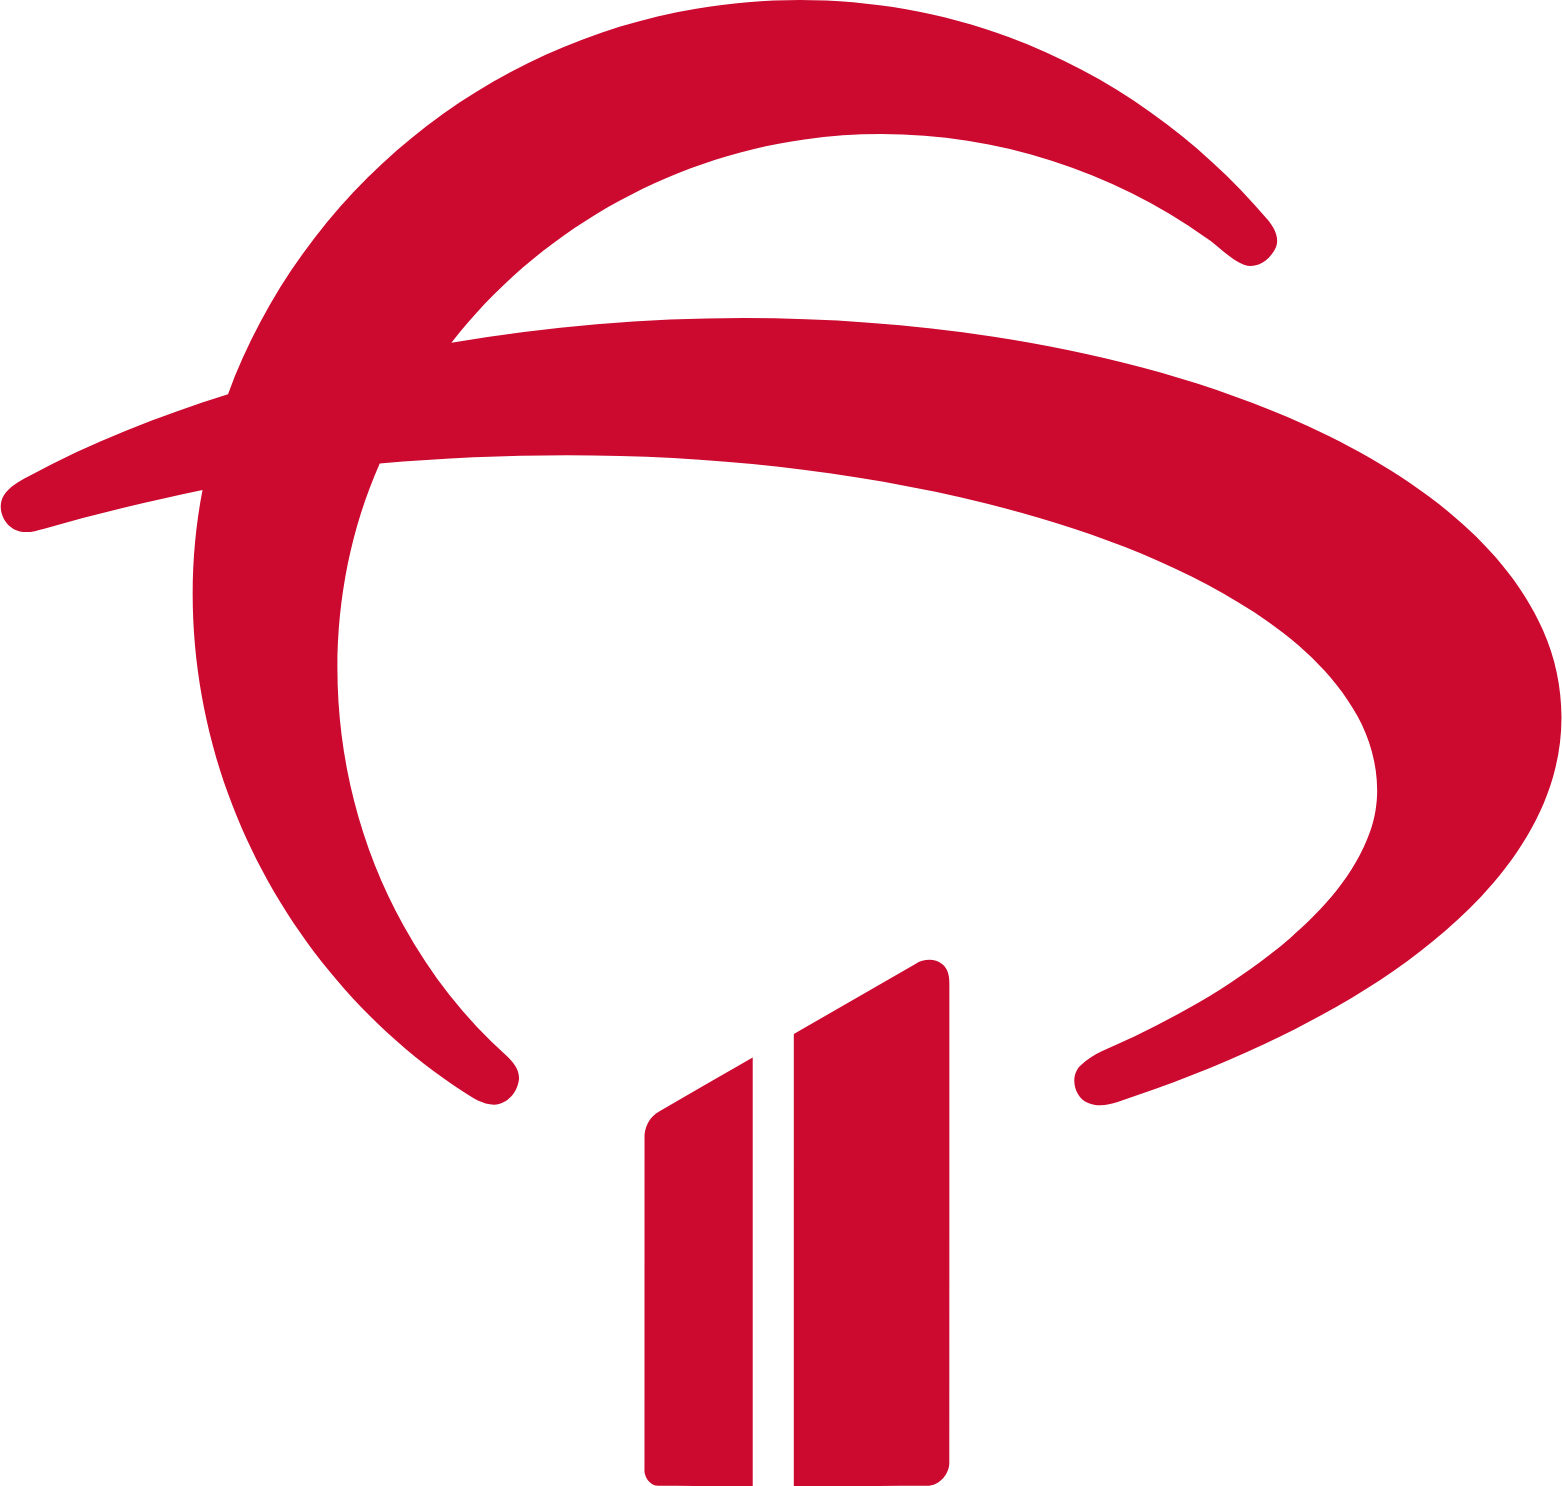 Banco Bradesco logo (PNG transparent)